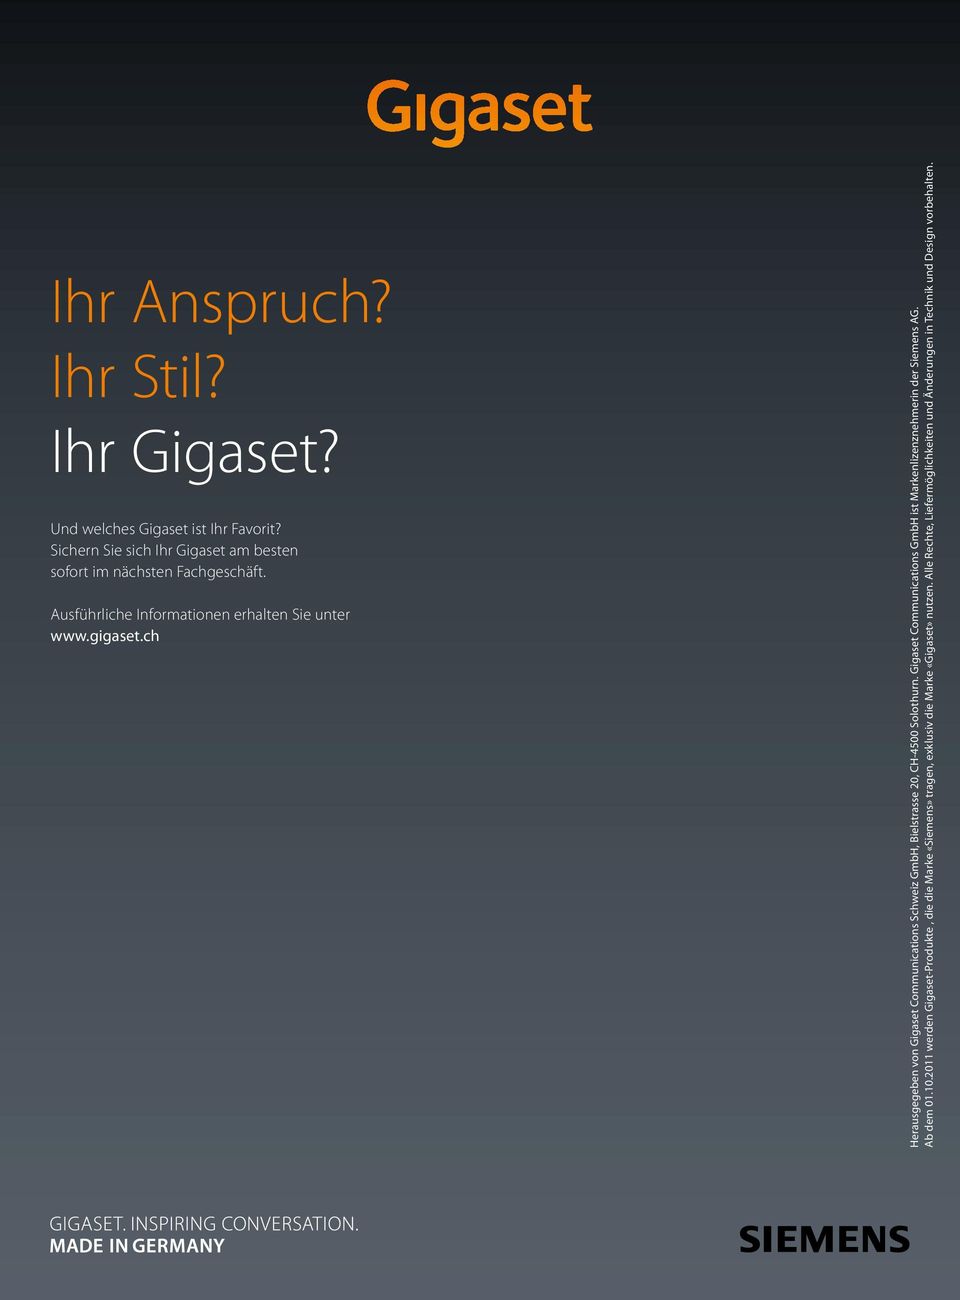 ch Herausgegeben von Gigaset Communications Schweiz GmbH, Bielstrasse 20, CH-4500 Solothurn.